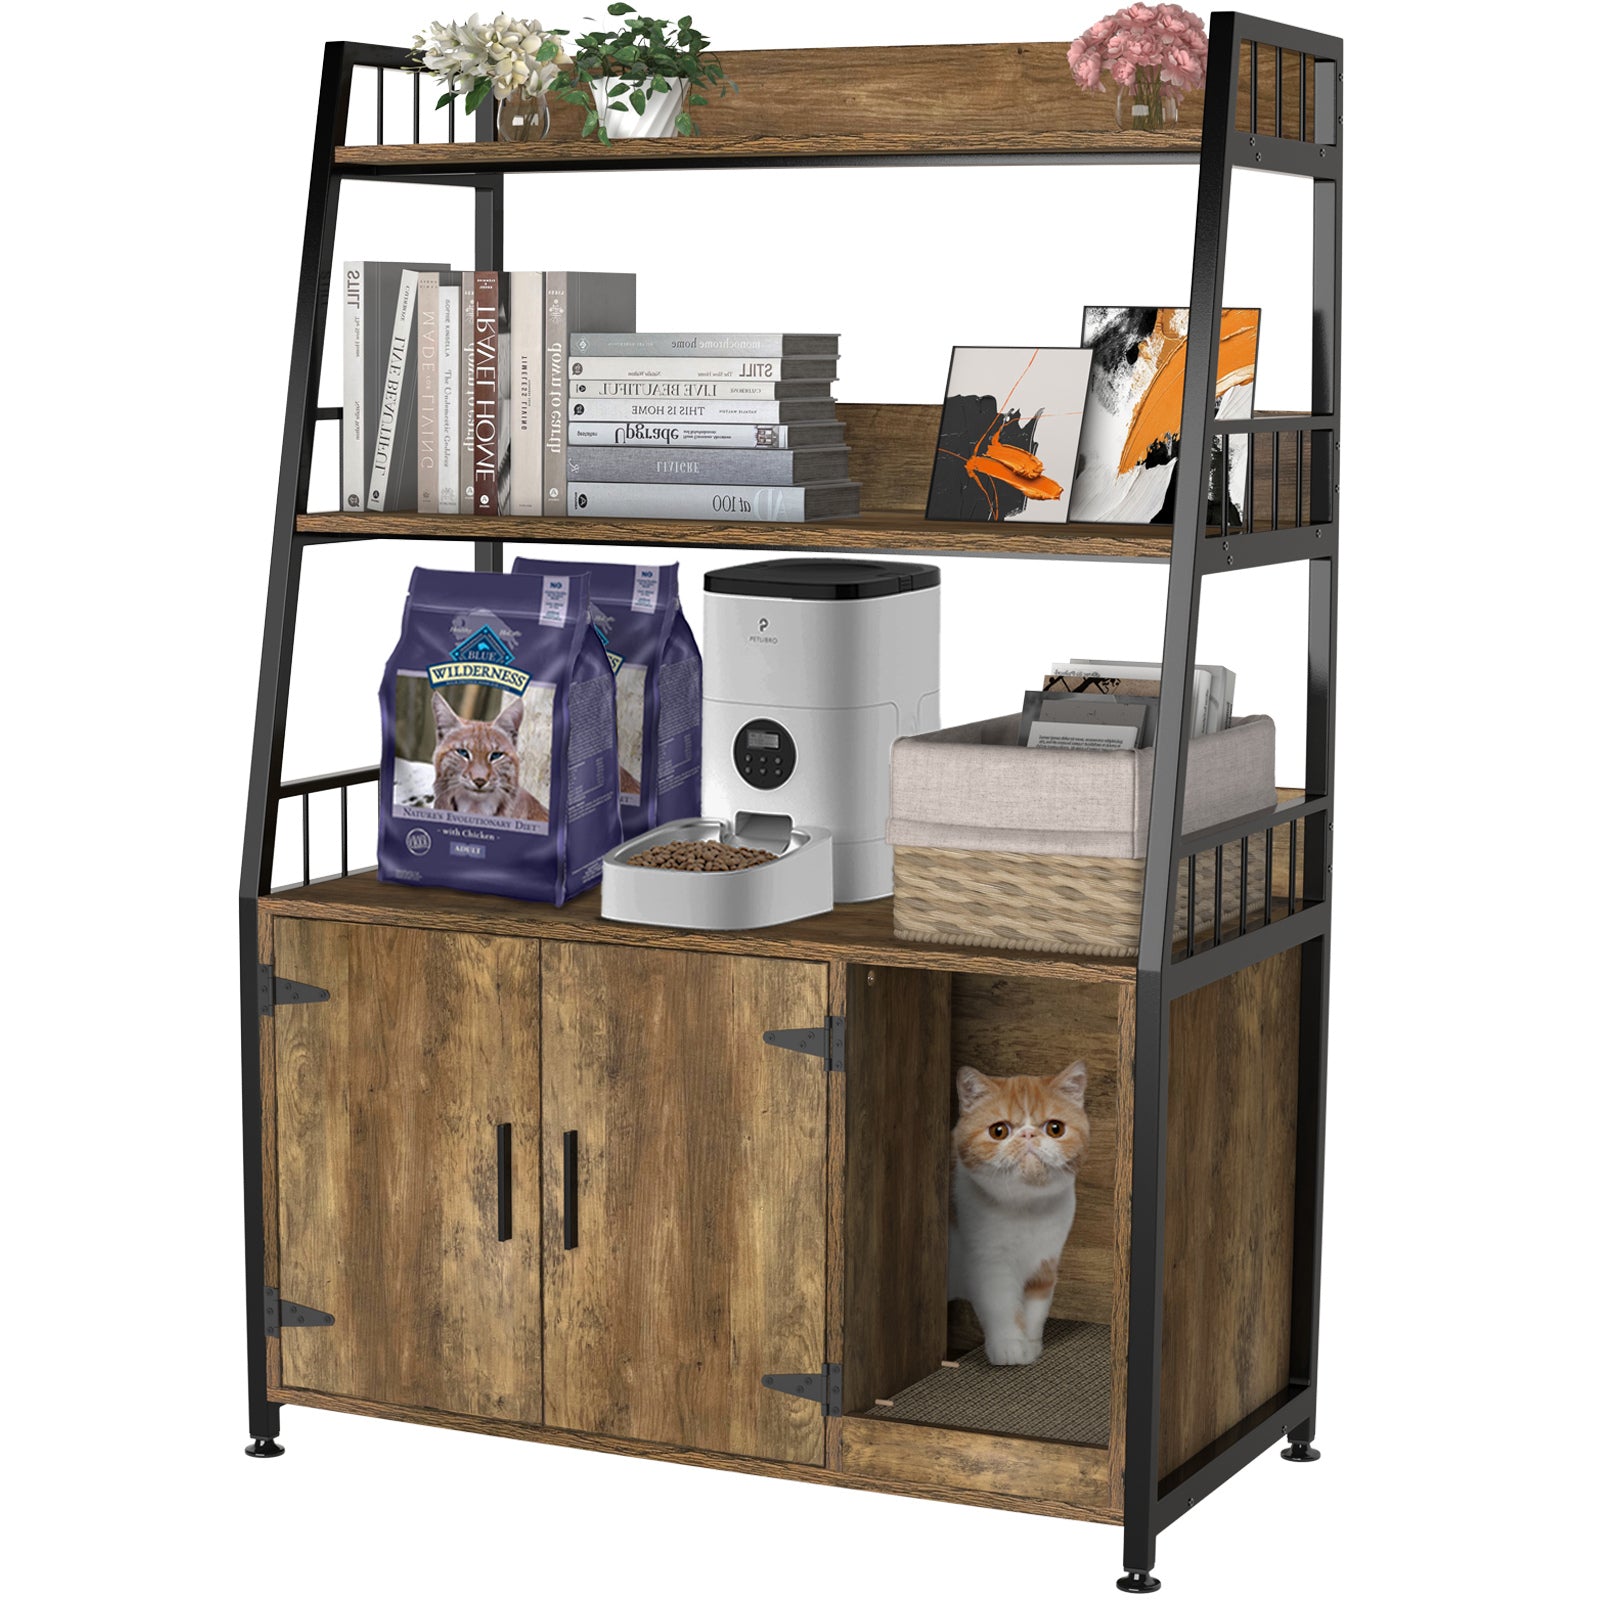  DOVEAID Cat Litter Box Enclosure Furniture Hidden, Pet